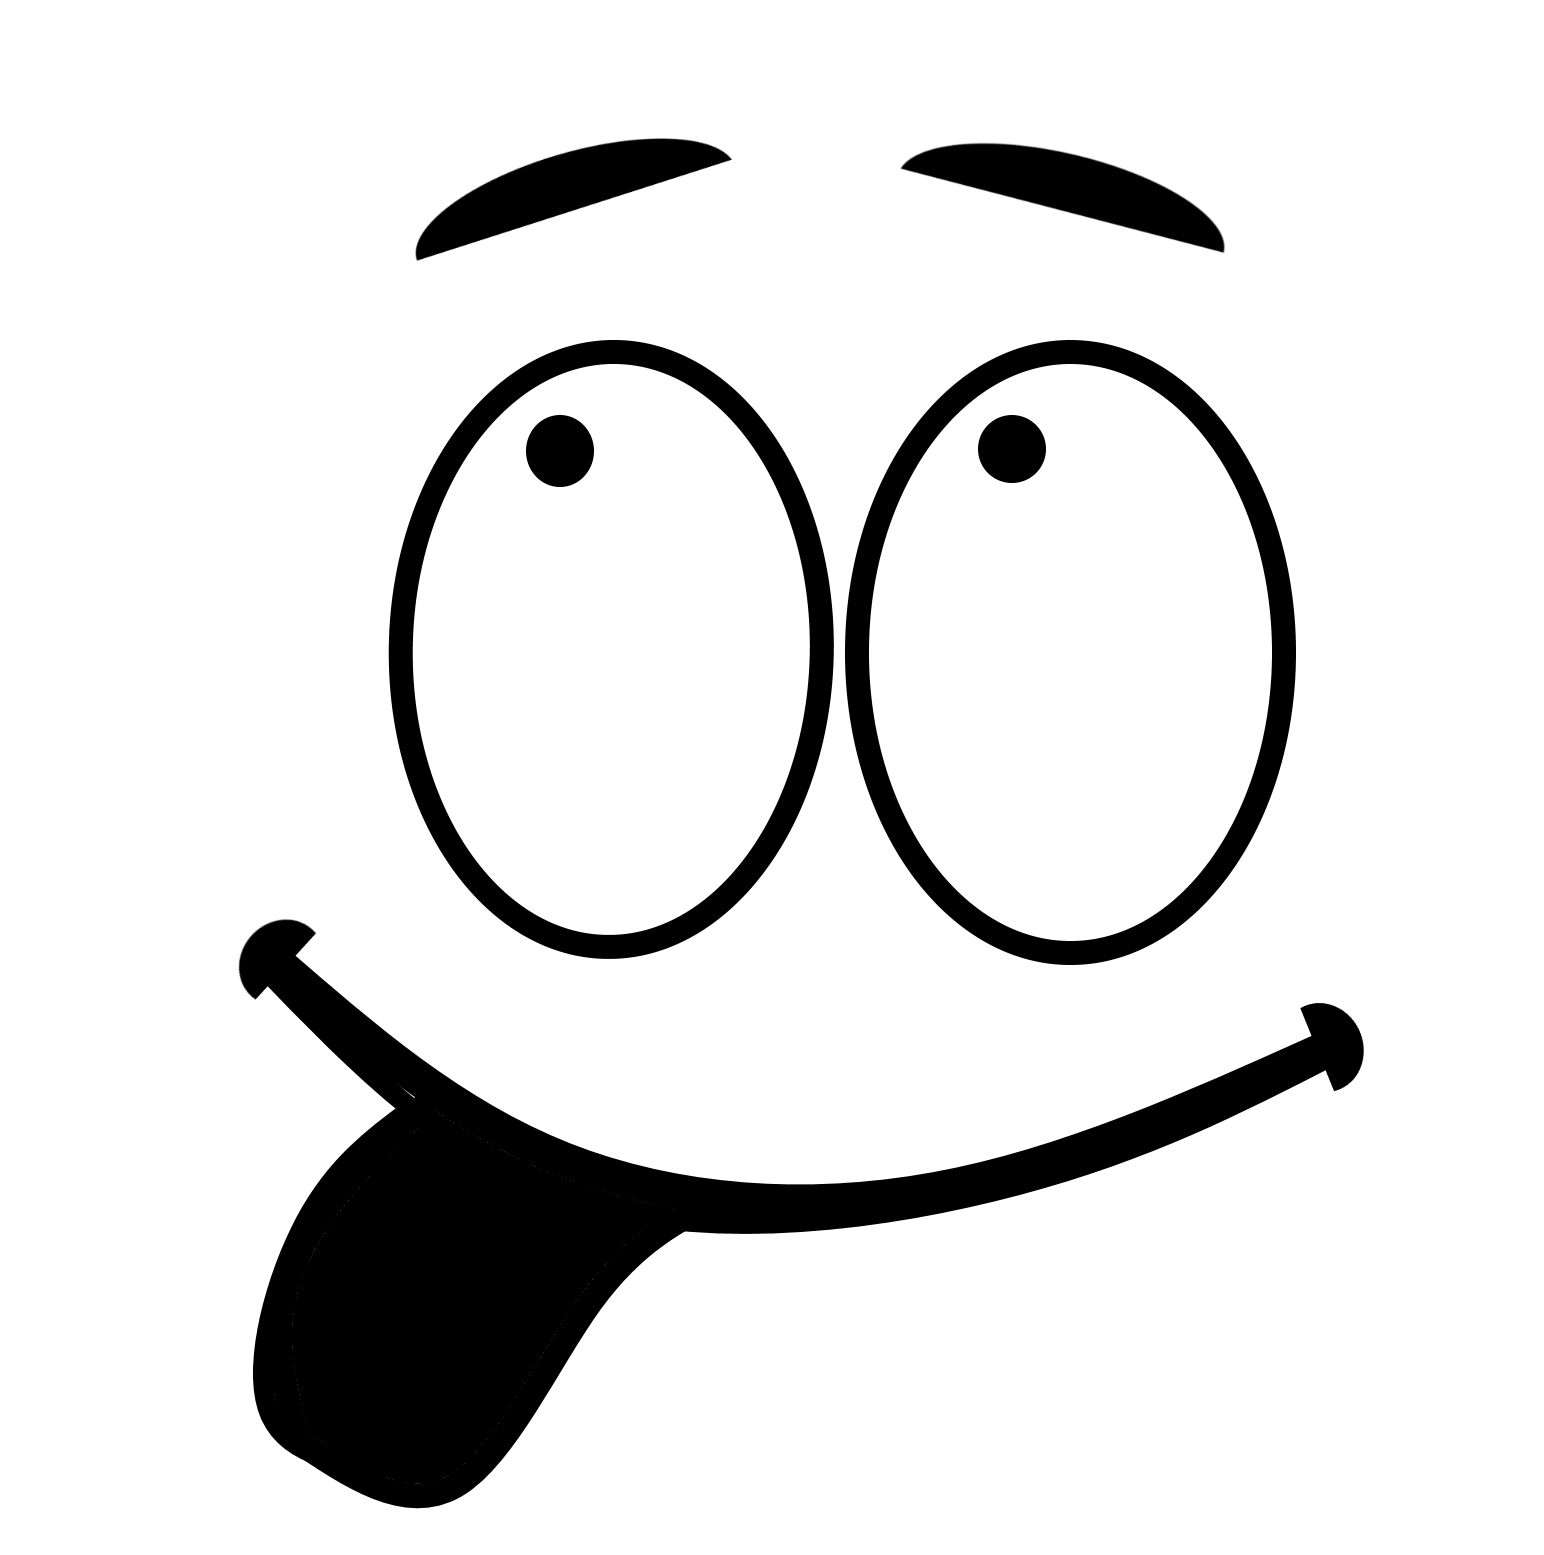 Emoji Art Outline Face PNG Image High Quality PNG Image